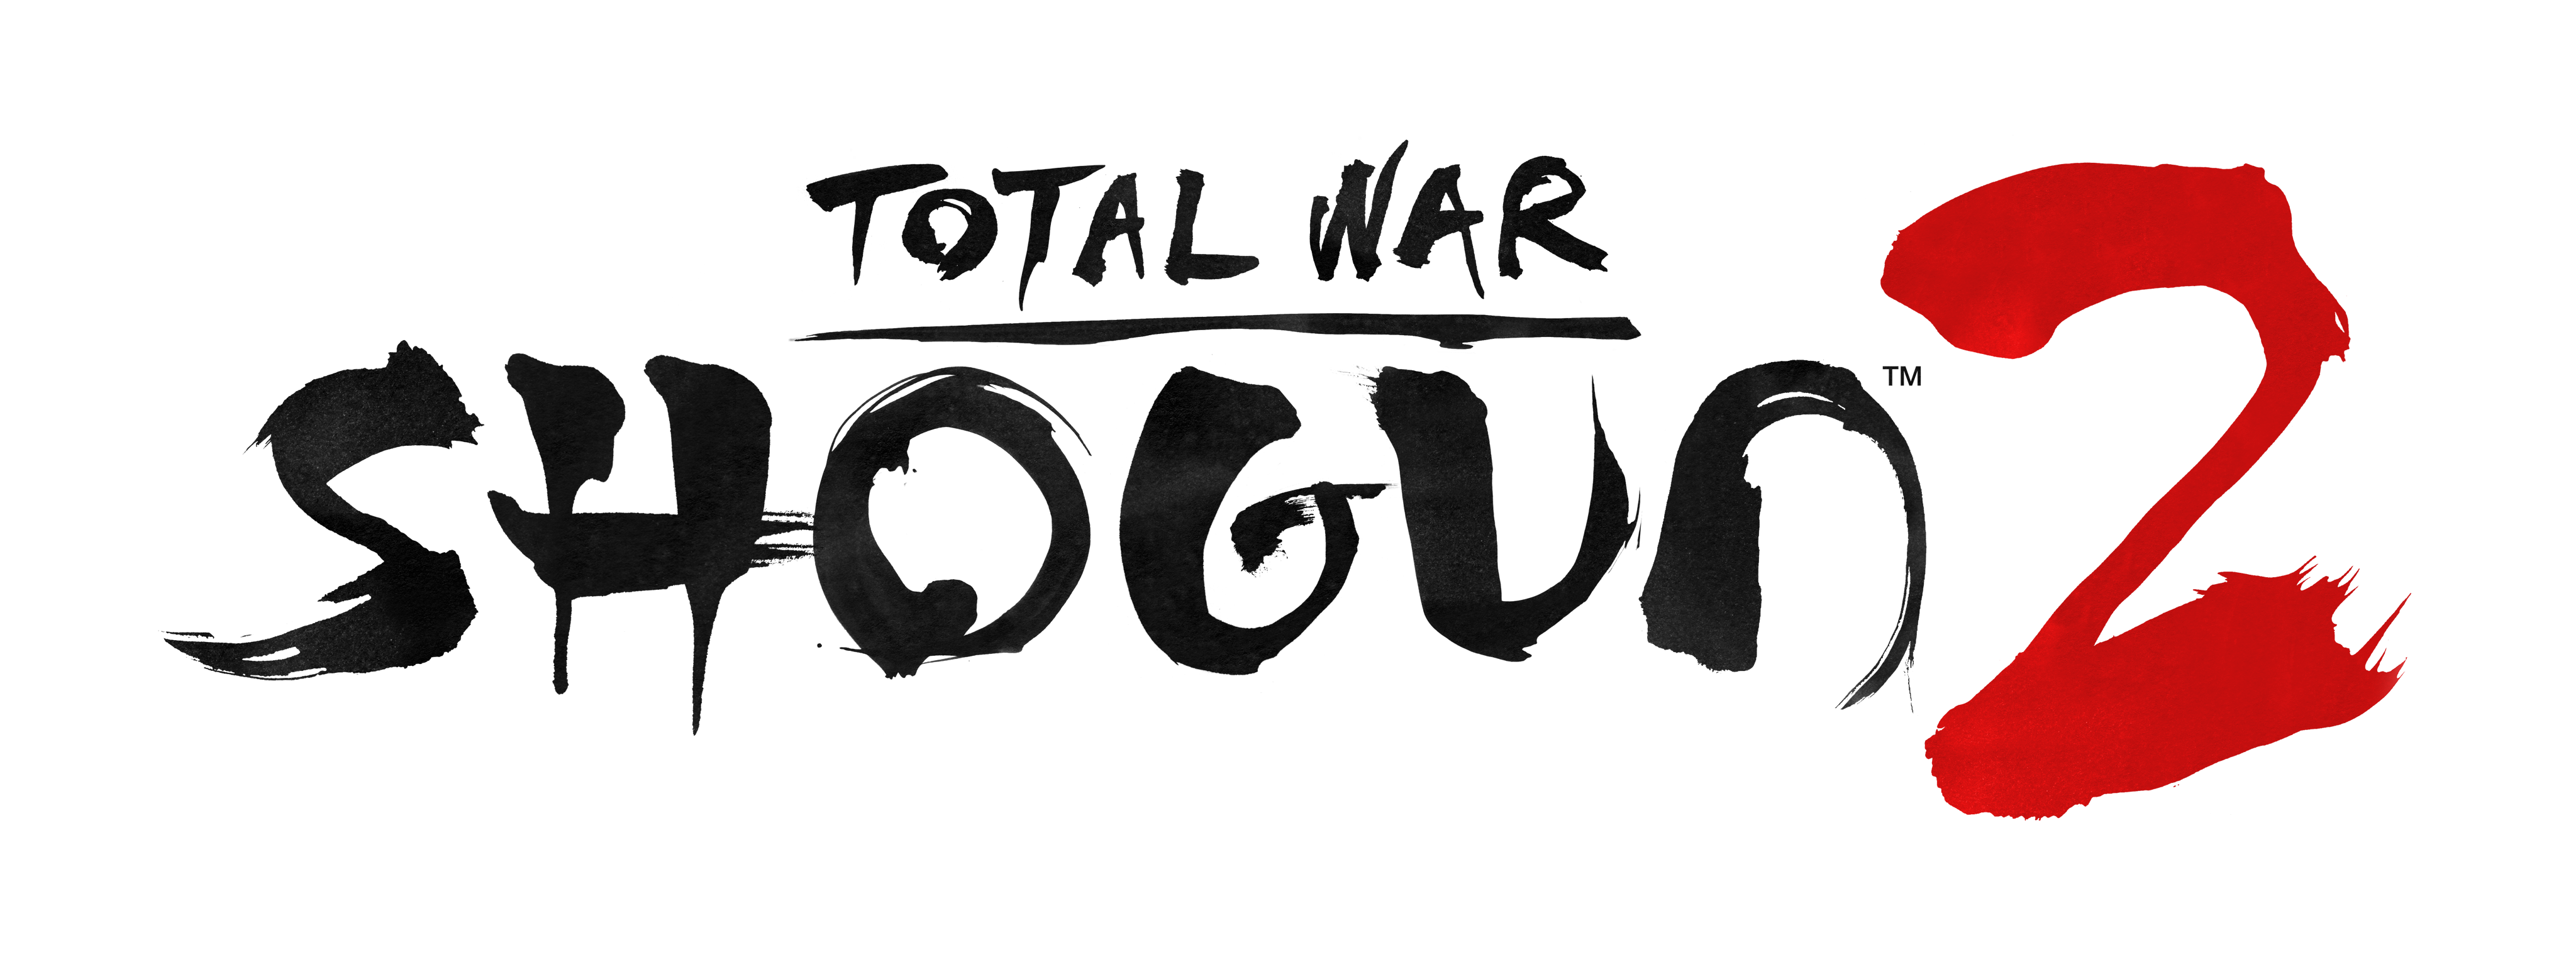 total war shogun 2 logo